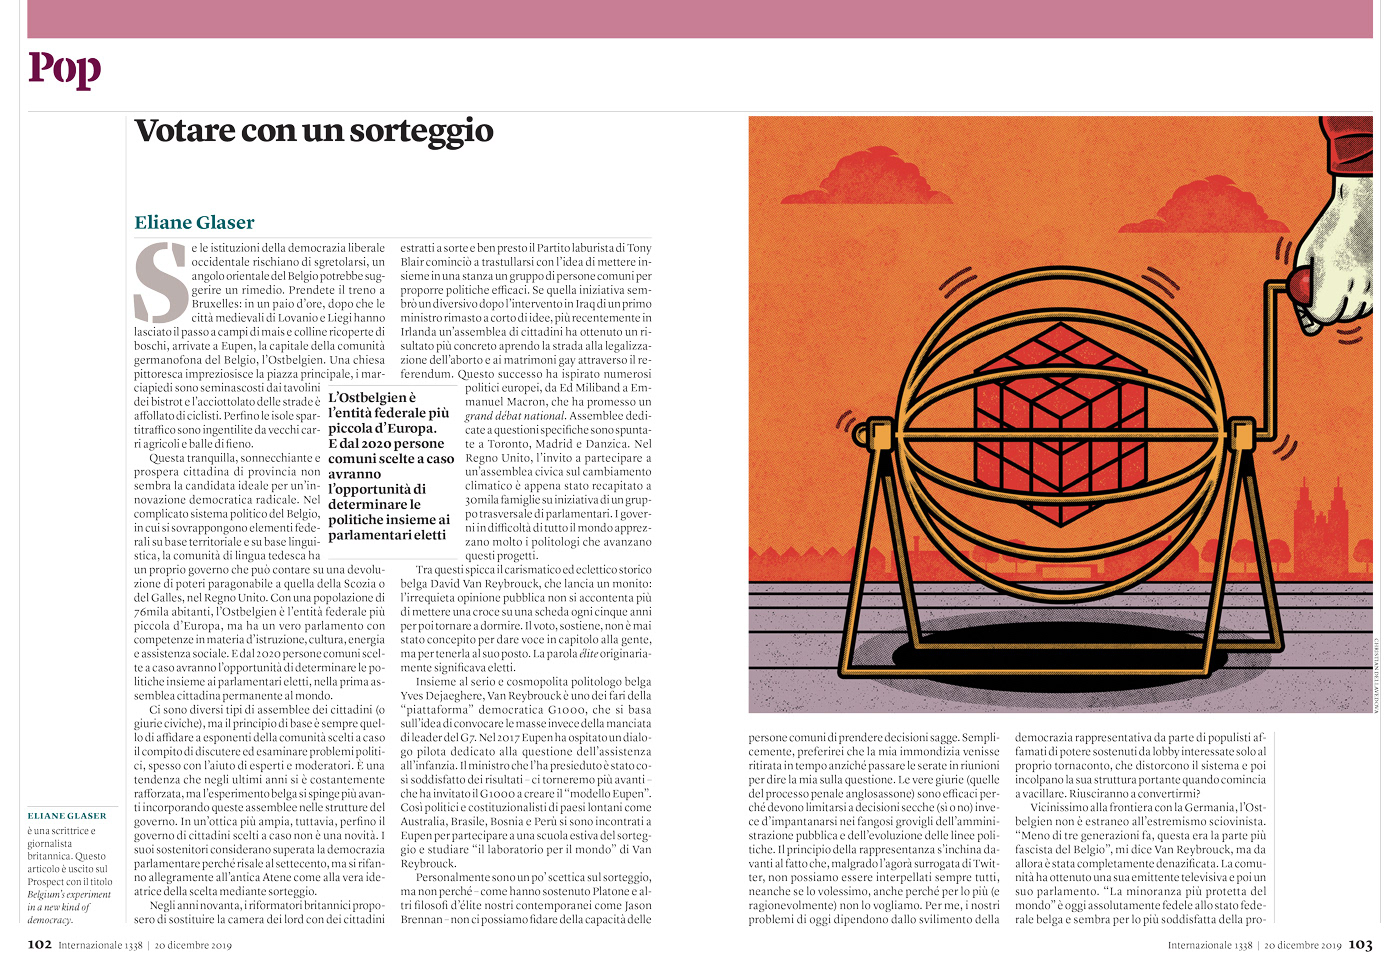 ILLUSTRATION  internazionale editorial vector conceptual digital politics magazine riviste illustrazione